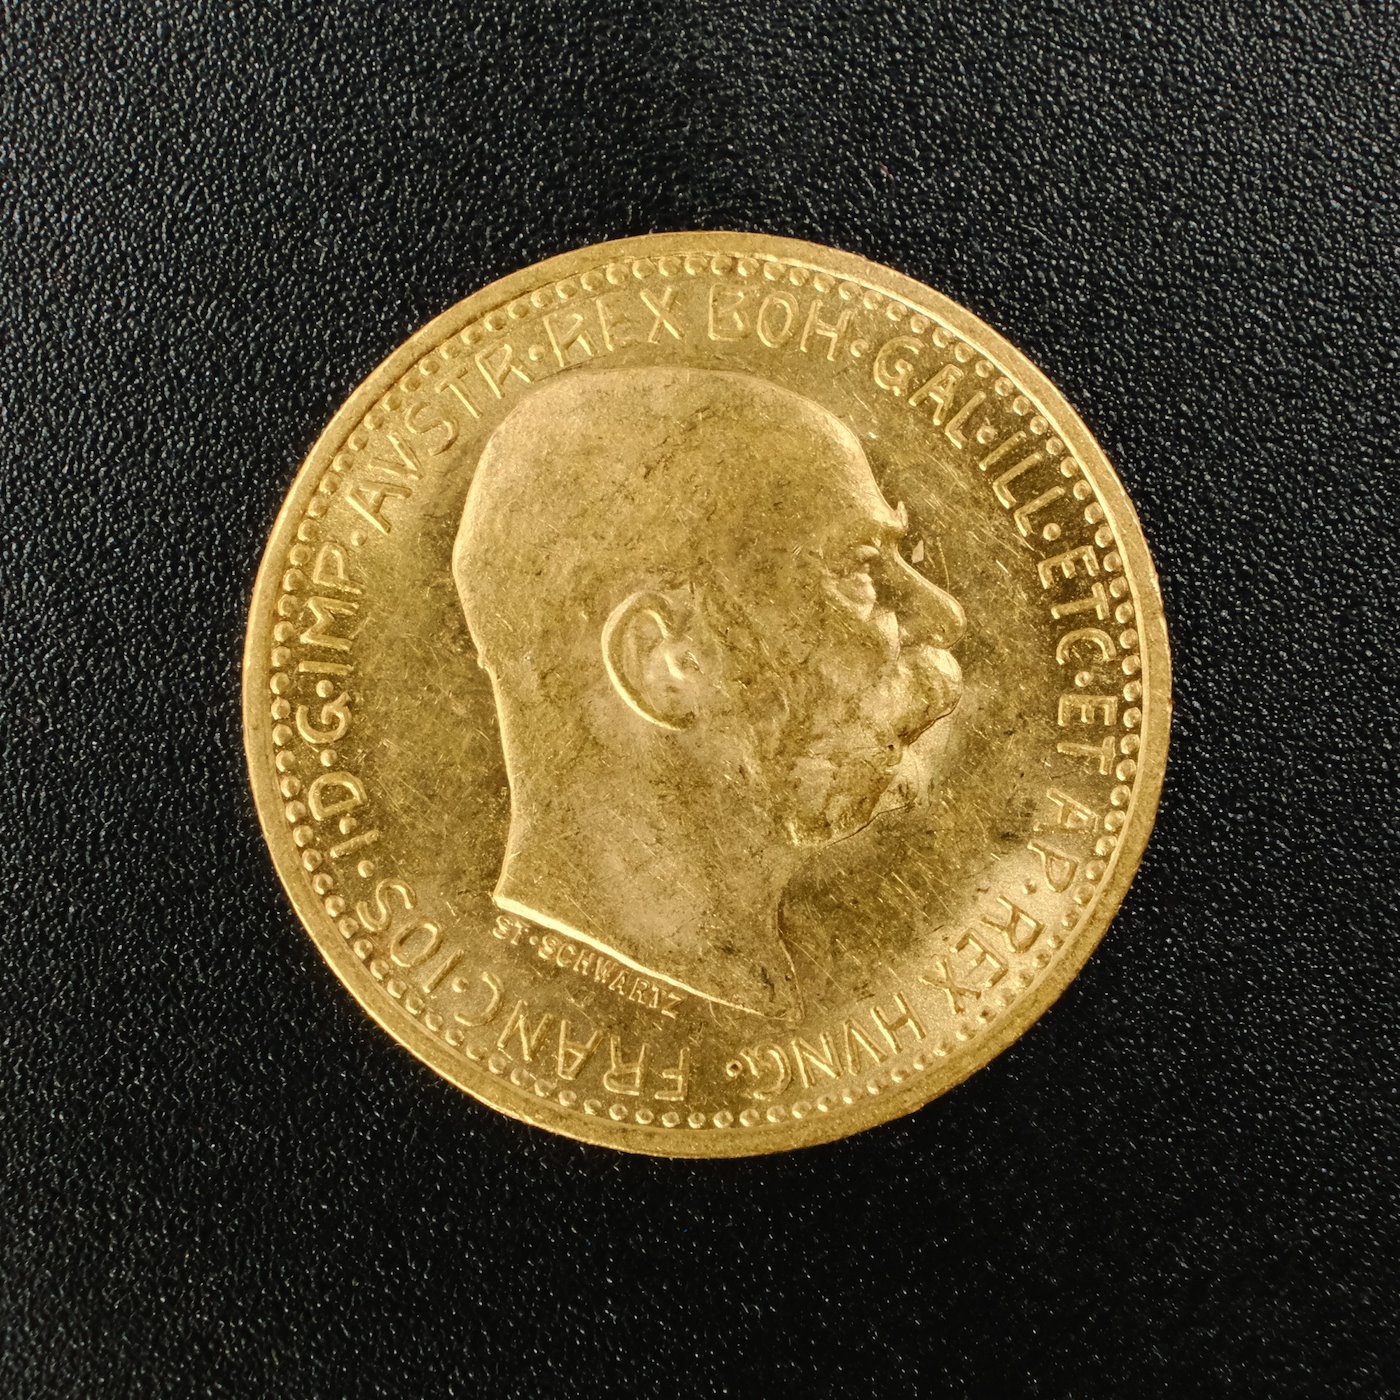 Mince - Rakousko Uhersko zlatá 10 Koruna 1911 rakouská, zlato 900/1000, hrubá hmotnost mince 3,387g